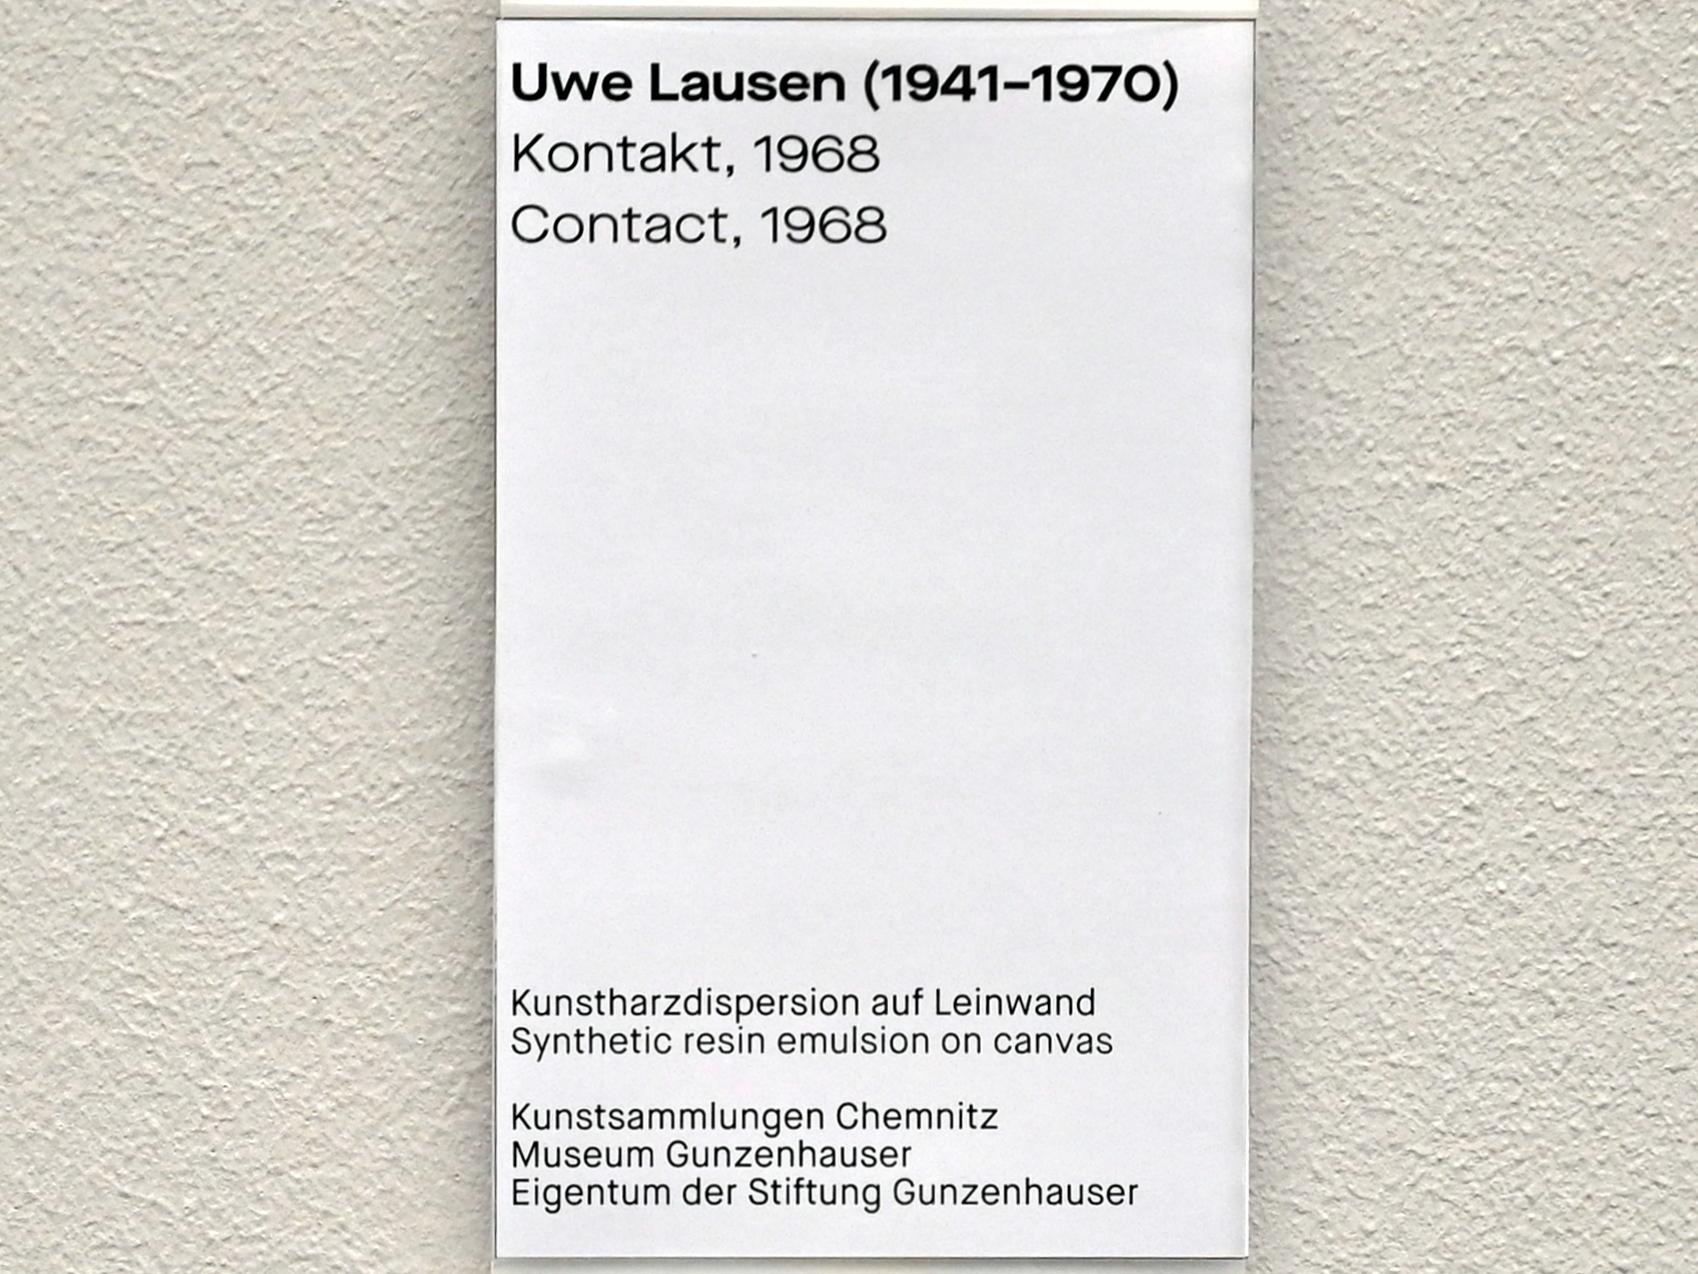 Uwe Lausen (1962–1969), Kontakt, Chemnitz, Museum Gunzenhauser, Saal 1.9 - Uwe Lausen und Heide Stolz, 1968, Bild 2/2